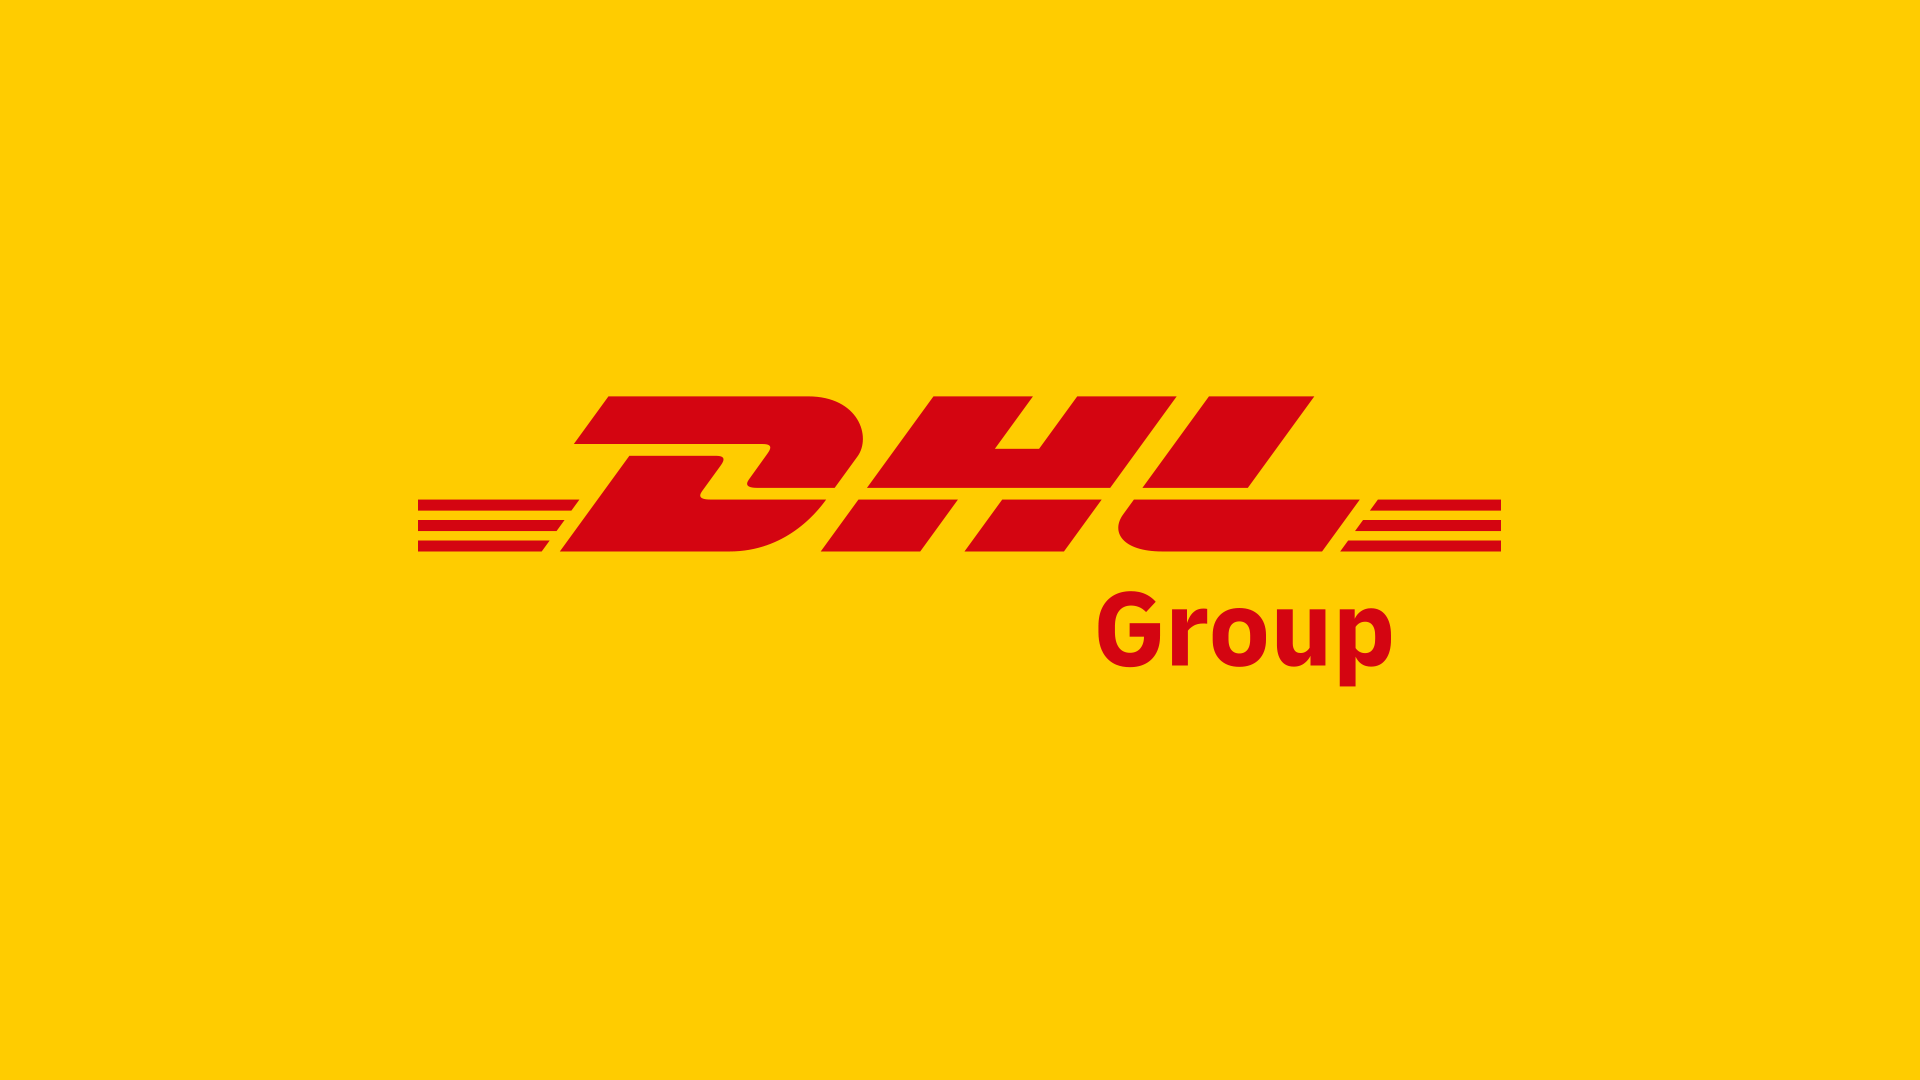 德國郵政敦豪集團更名為敦豪集團（DHL Group）啟用新標誌 2